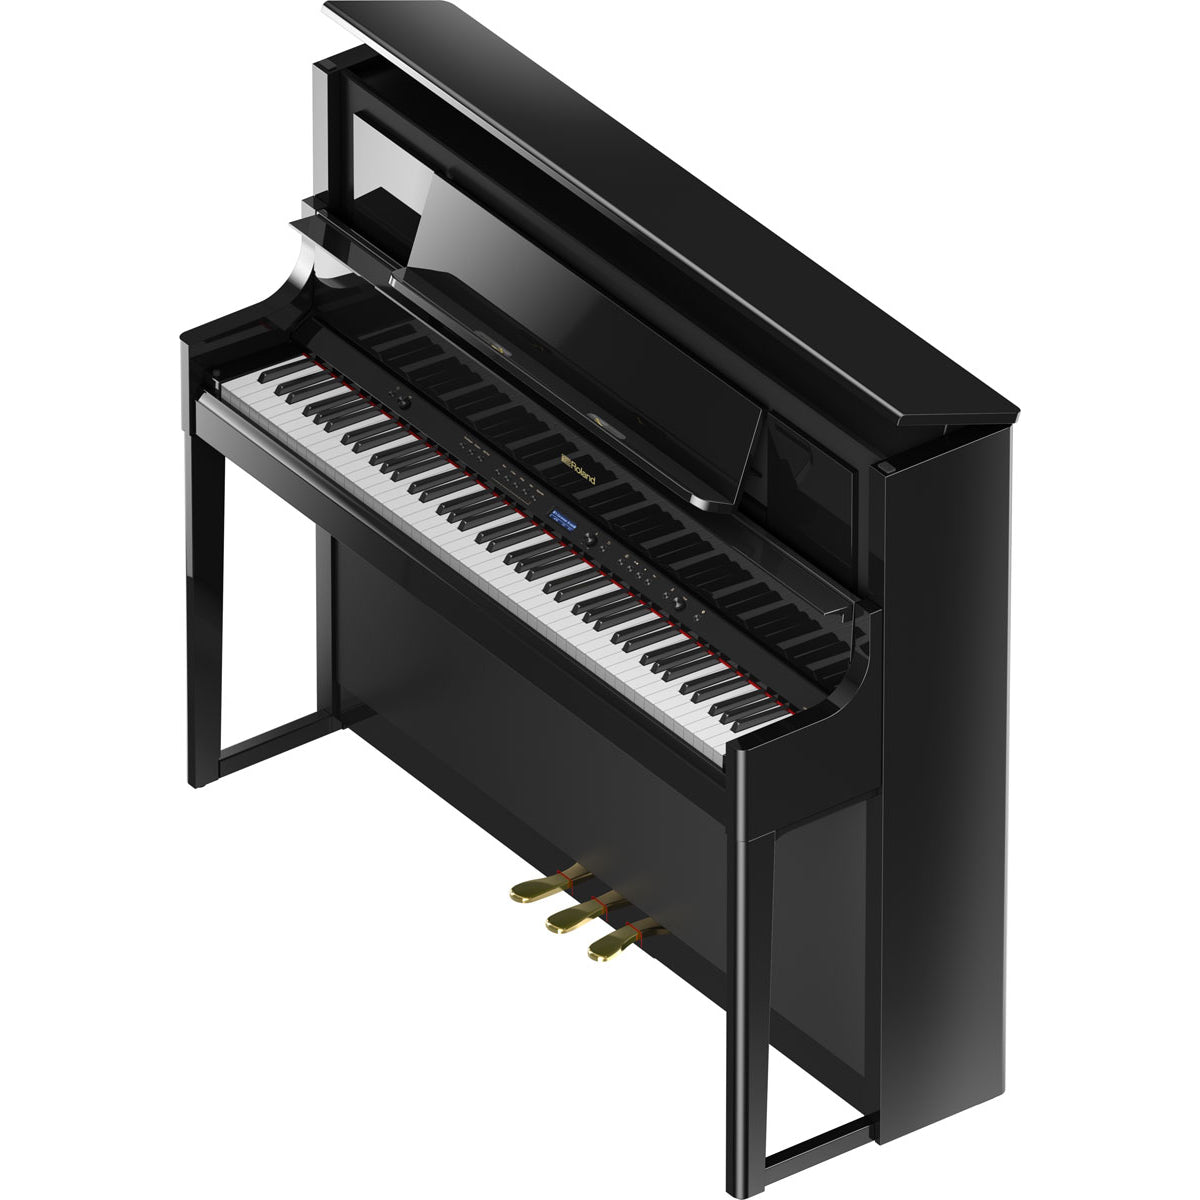 Đàn Piano Điện Roland LX-708